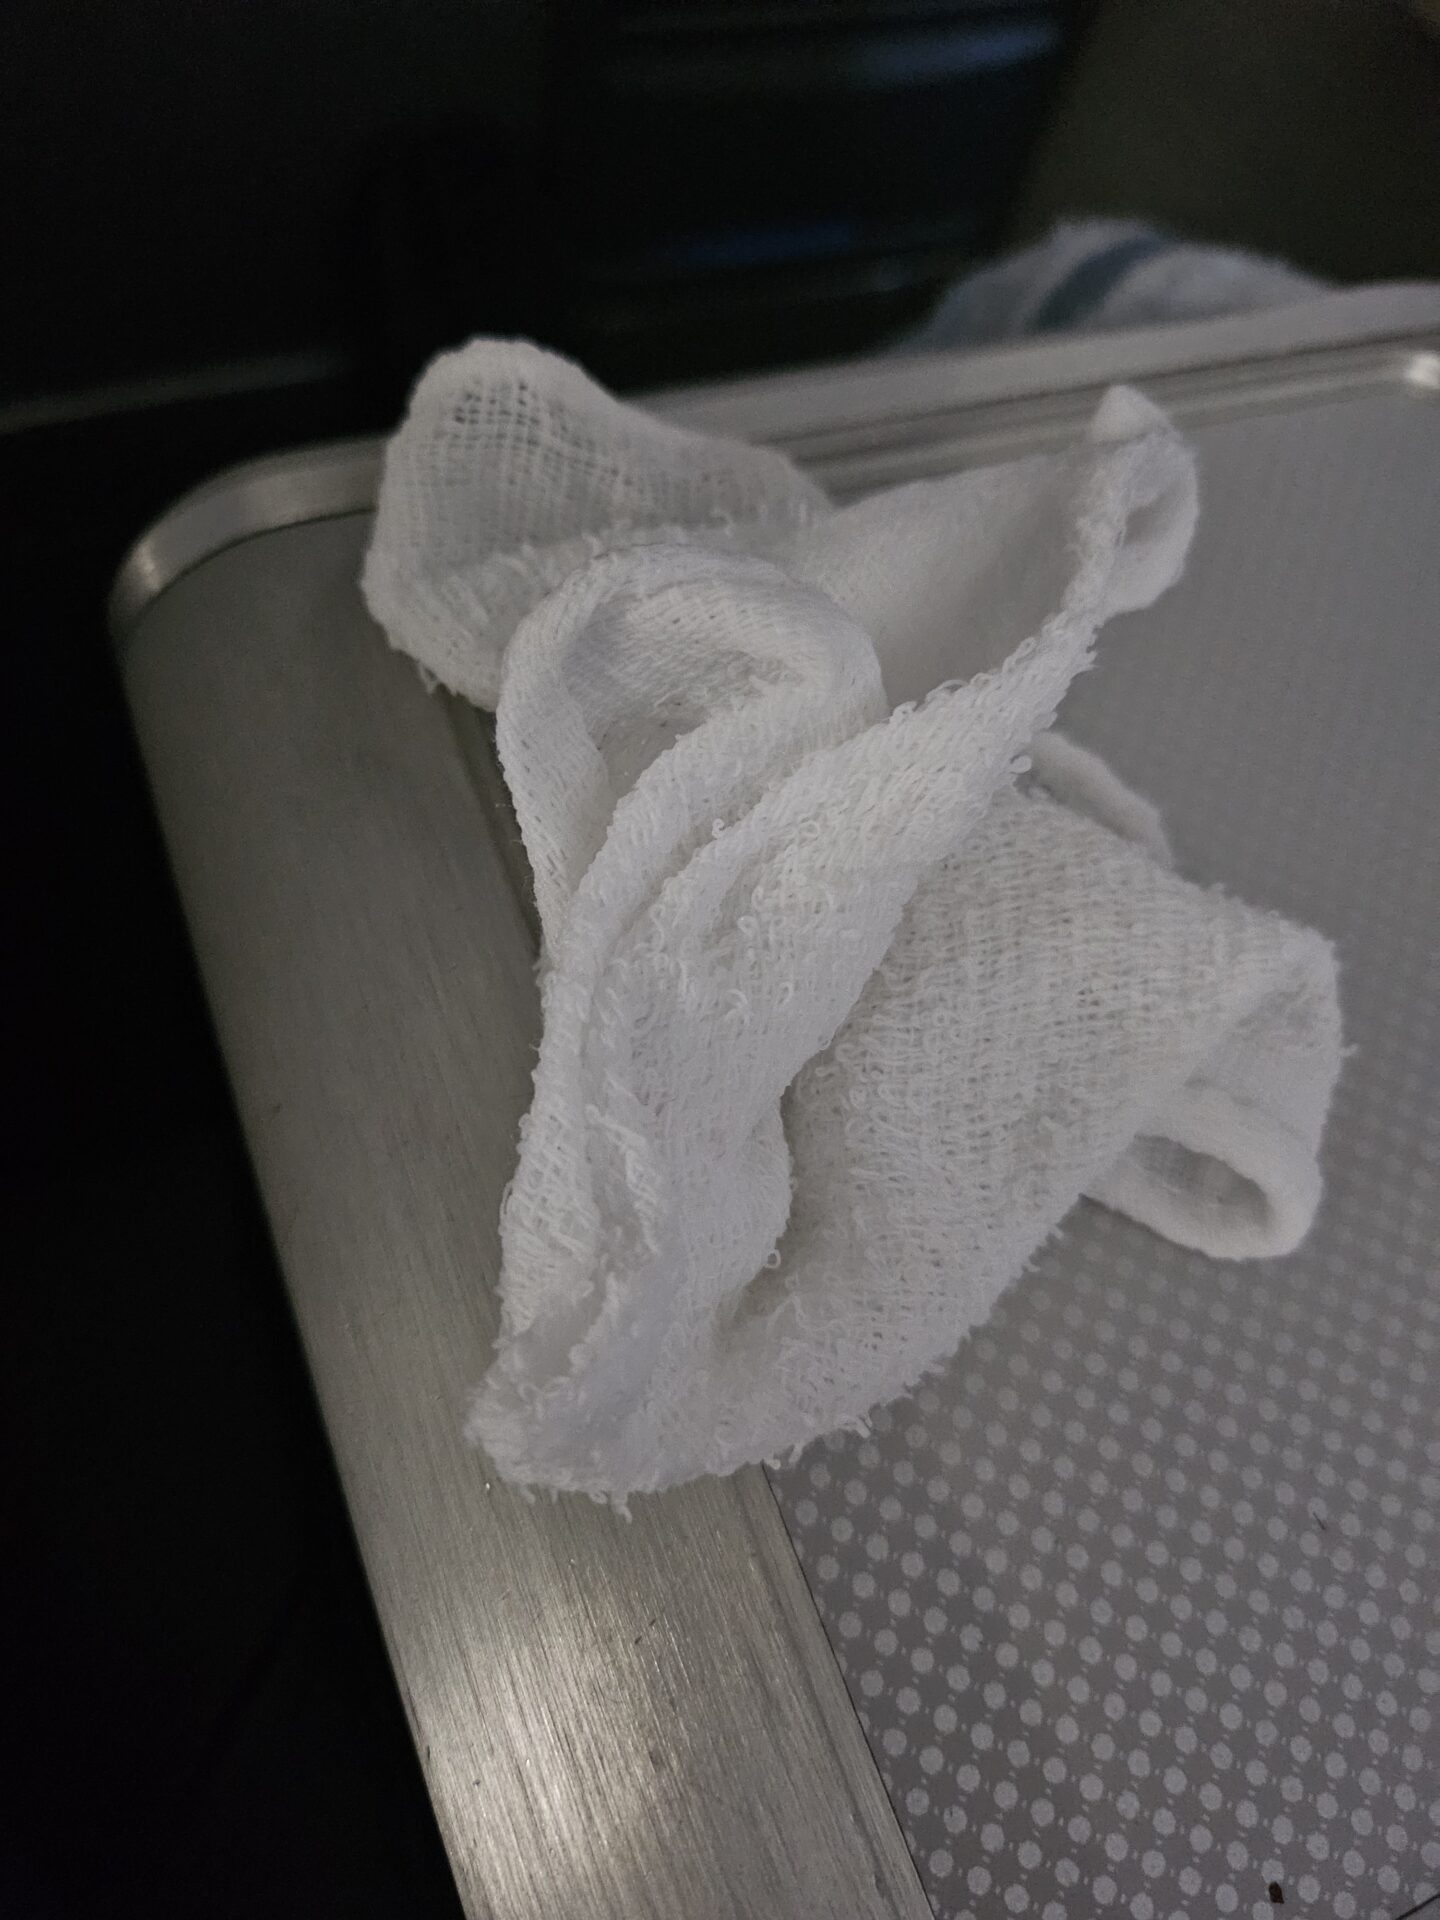 a white towel on a metal box